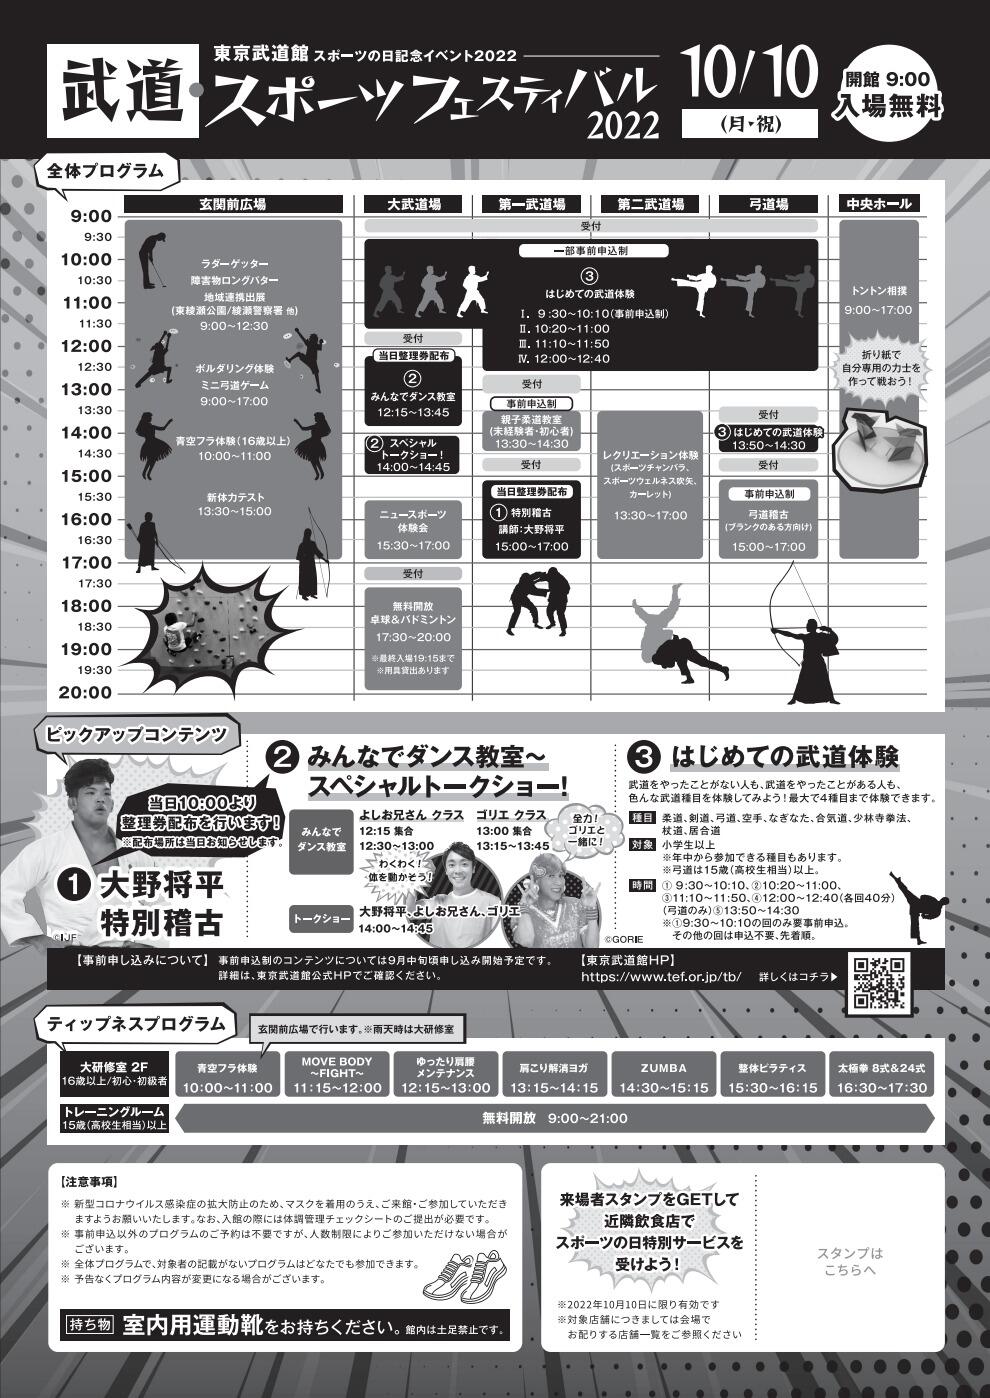 武道・スポーツフェスティバル2022「はじめての武道体験」【なぎなた】